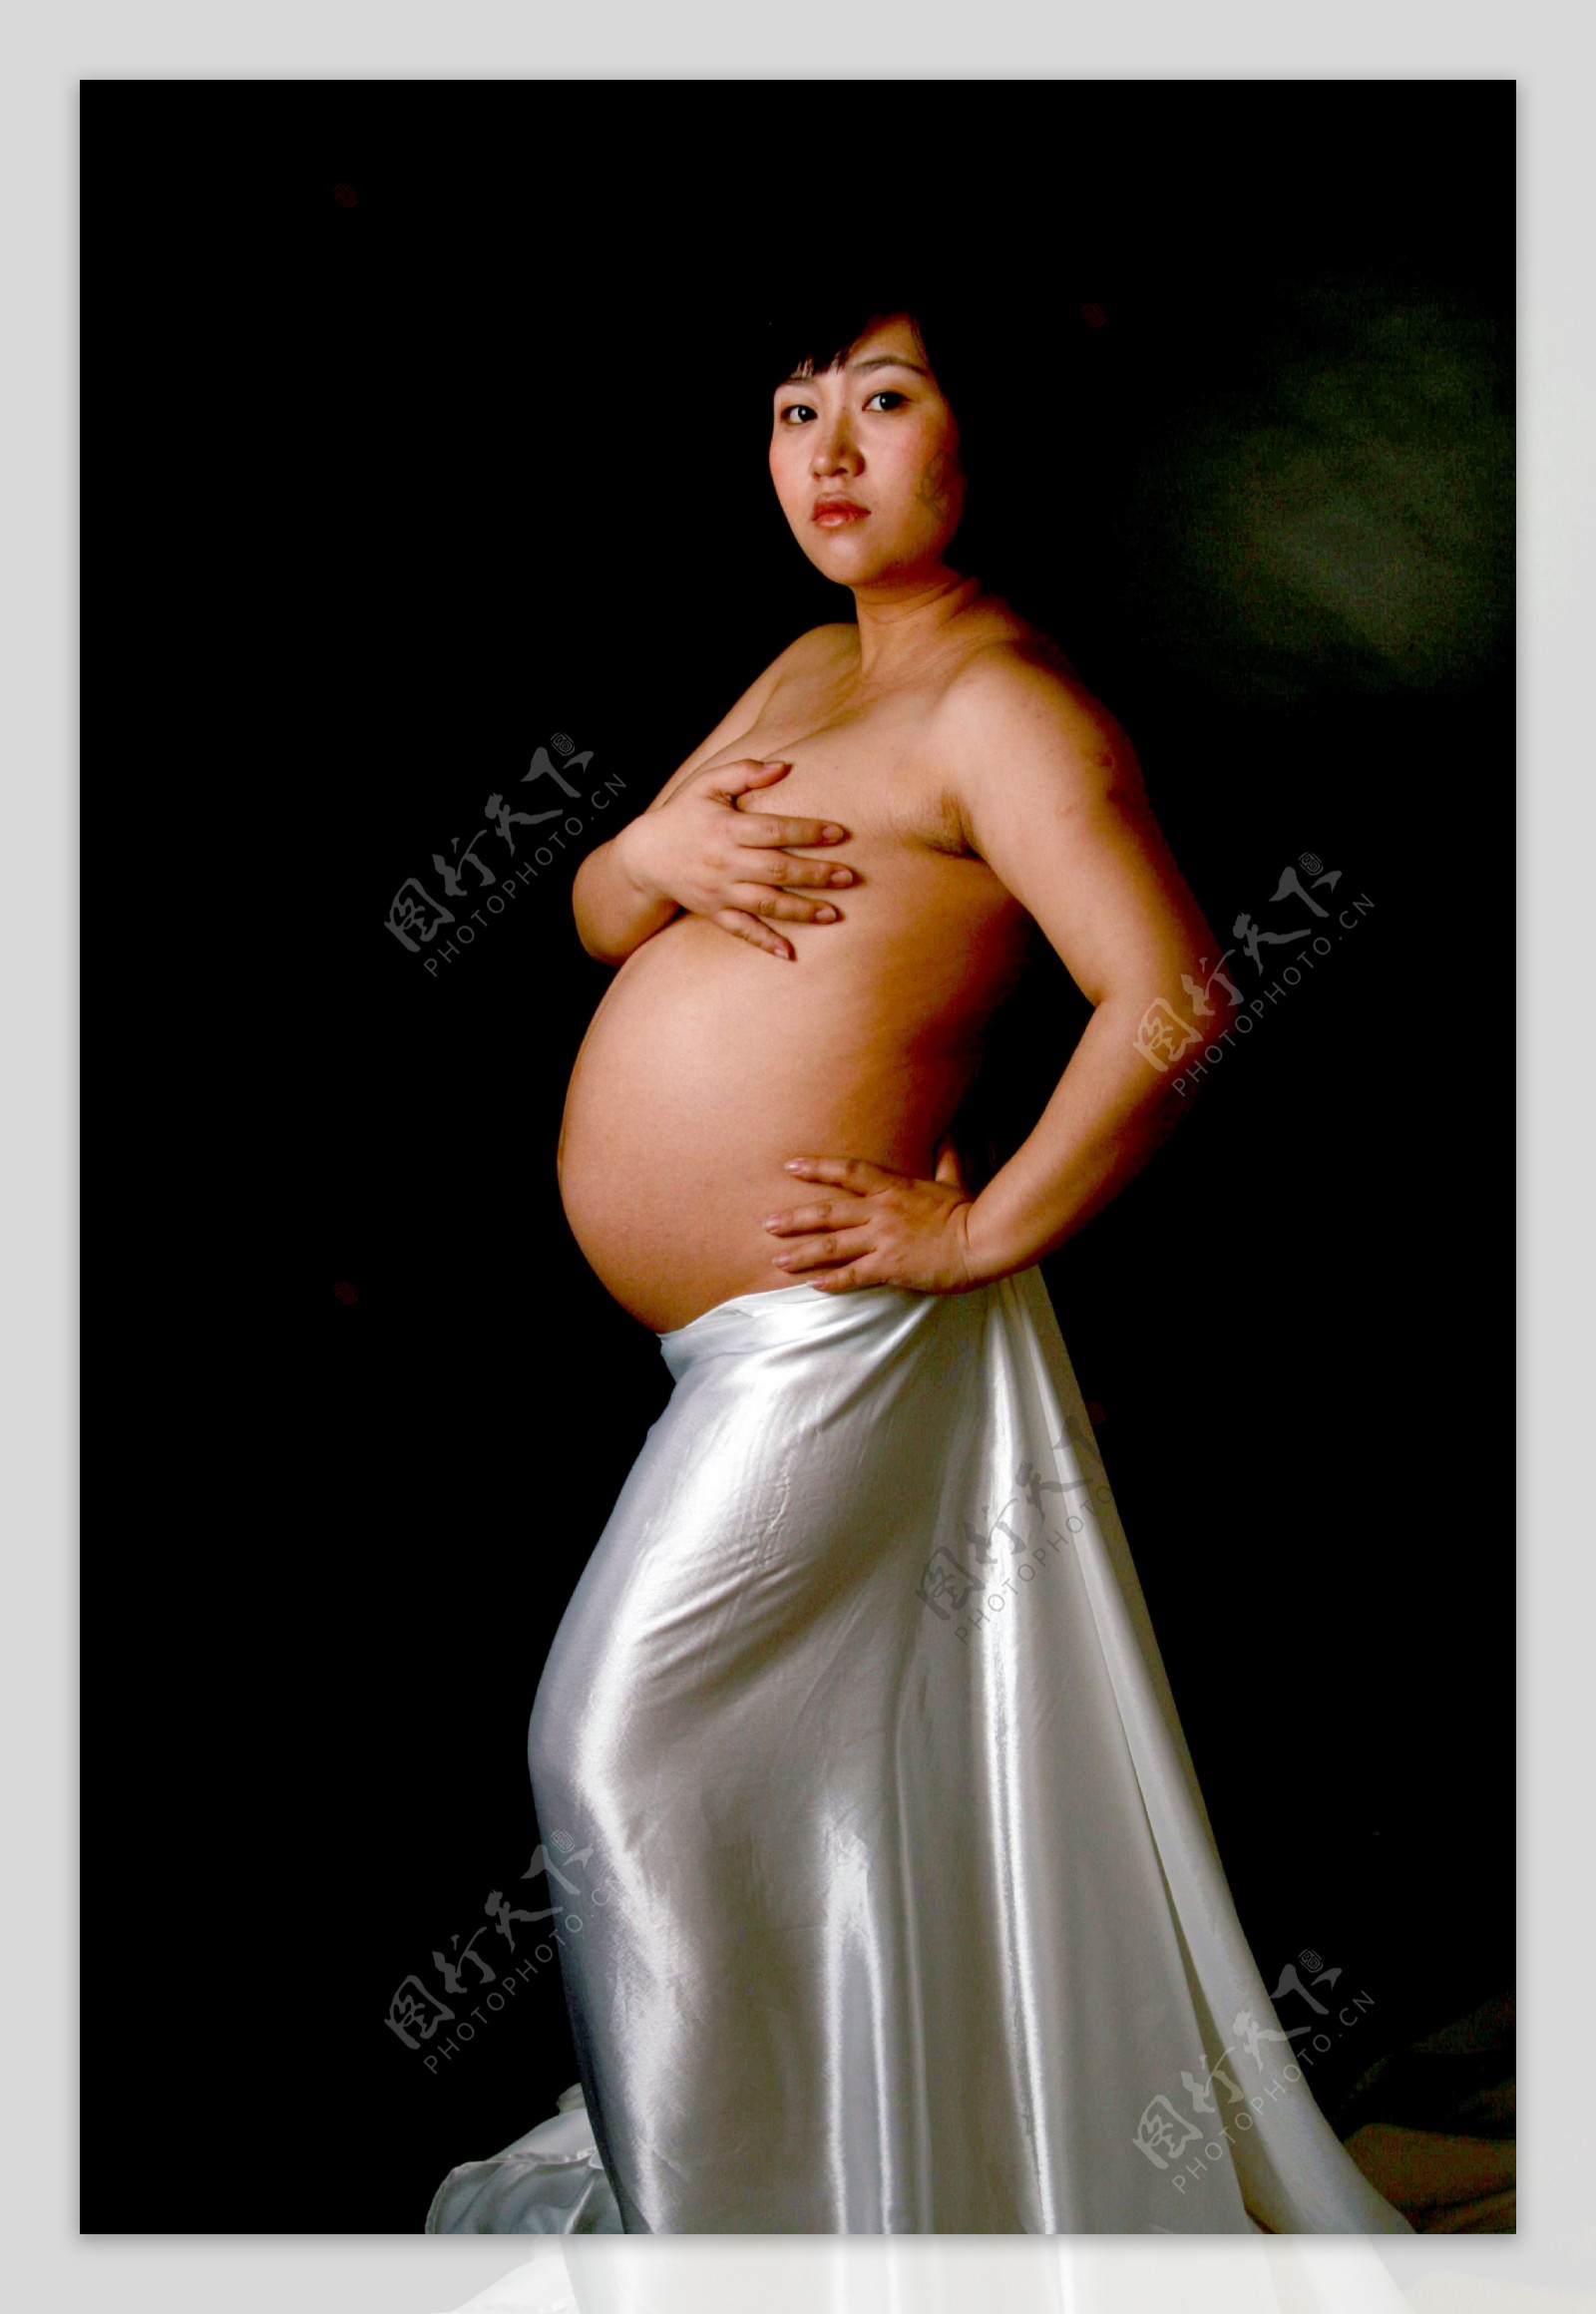 孕妇图片